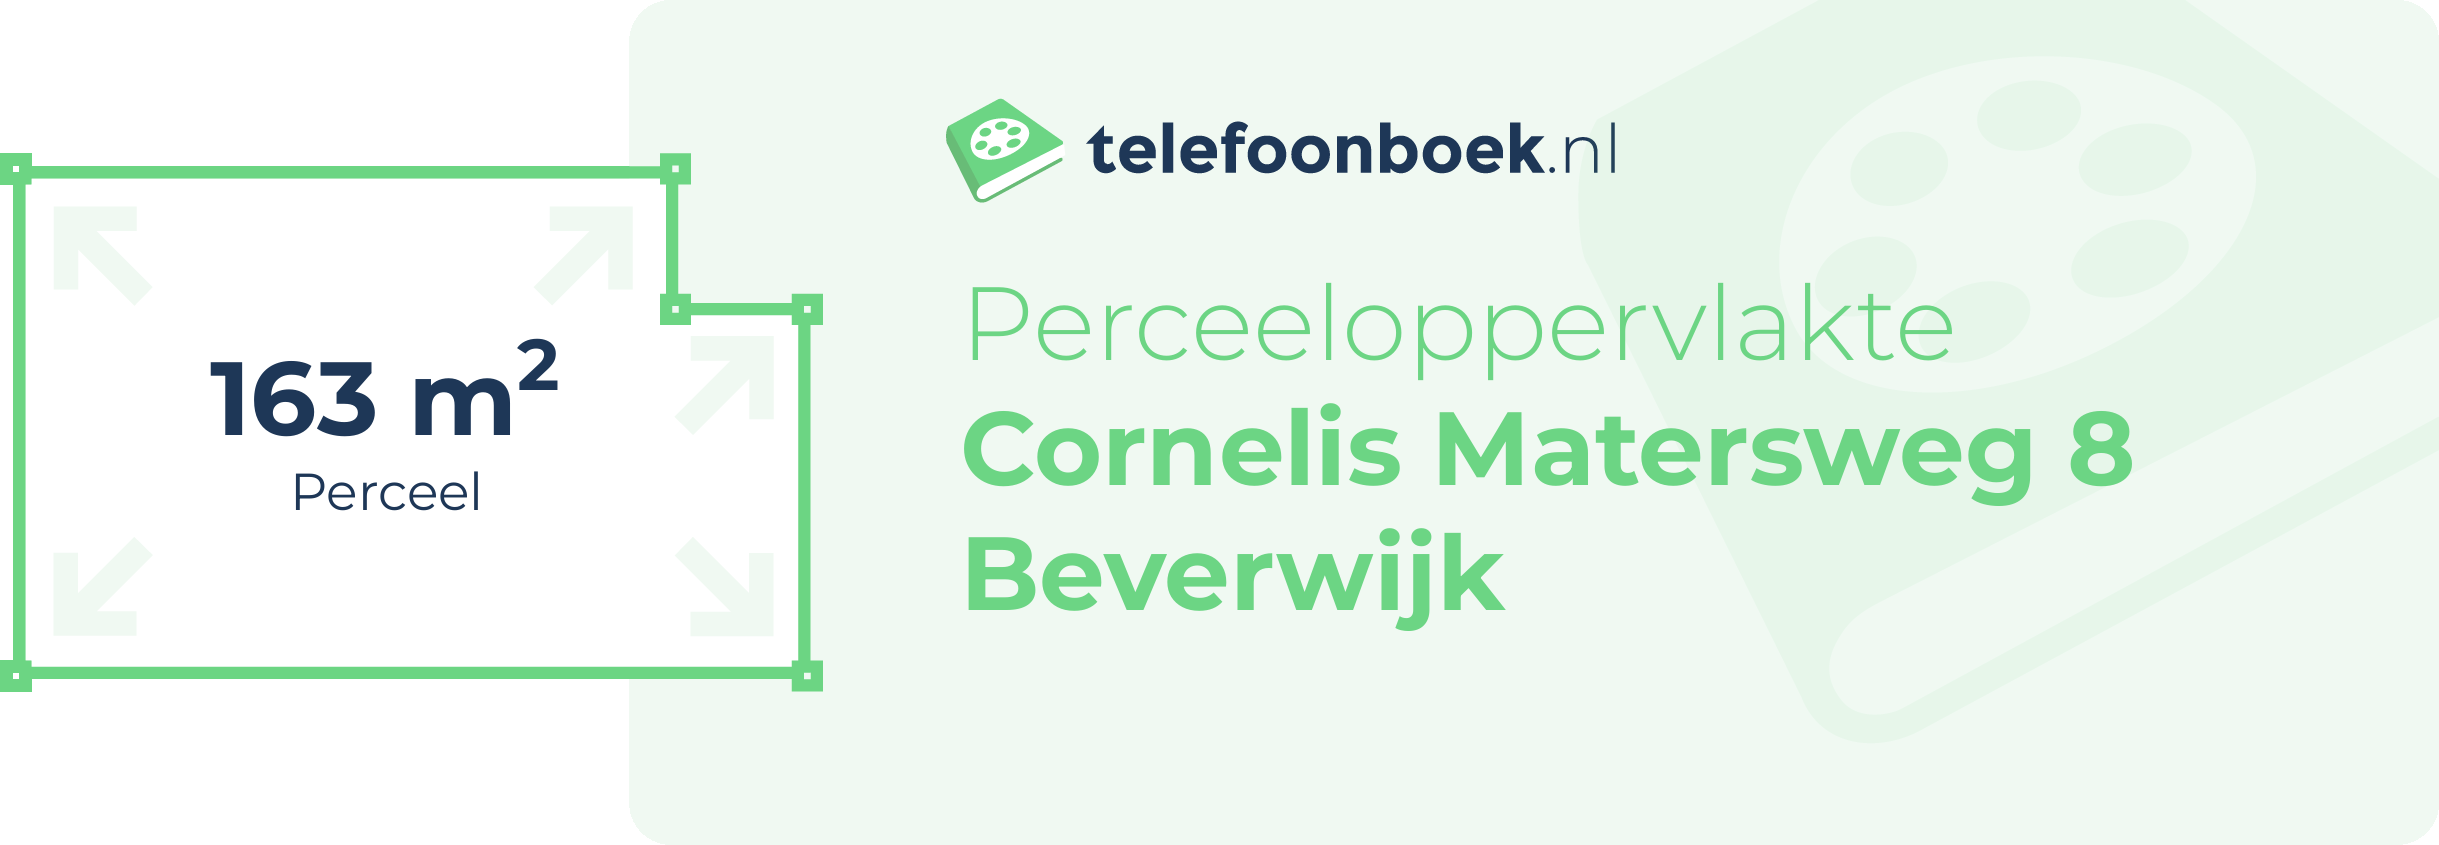 Perceeloppervlakte Cornelis Matersweg 8 Beverwijk